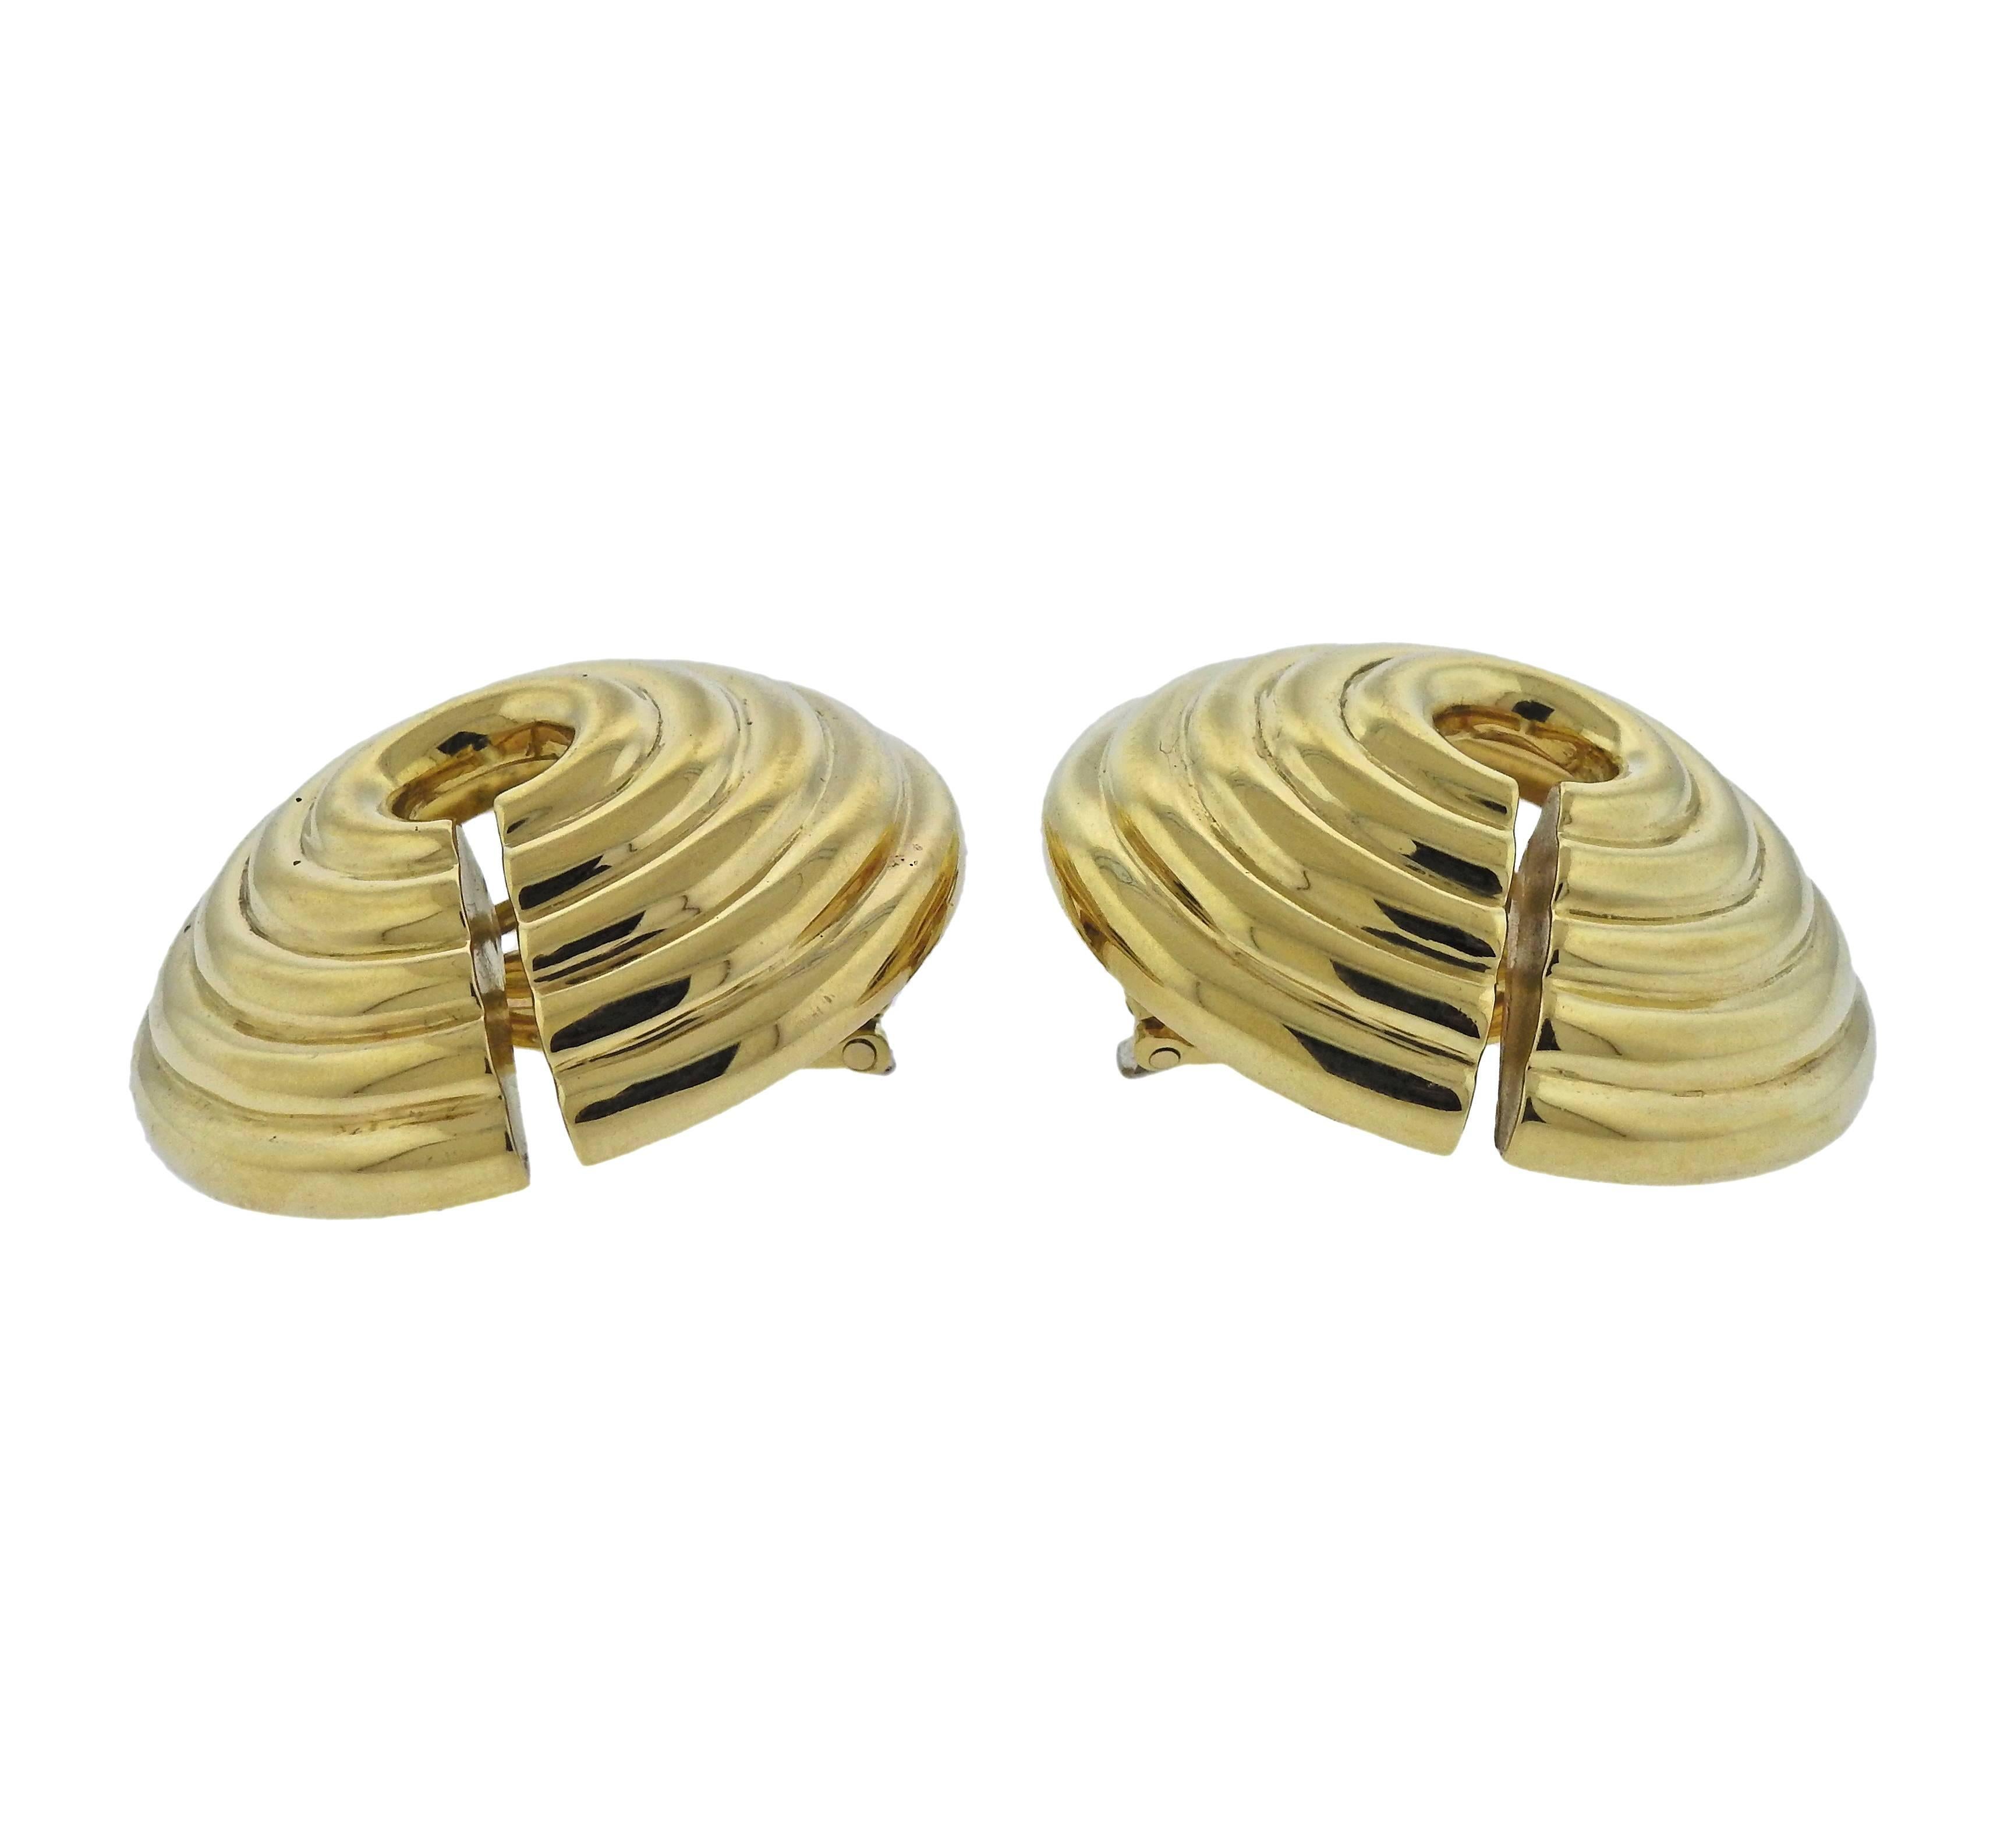 Large pair of David Webb 18k gold earrings, measuring 34mm in diameter. Weigh 41.4 grams. Marked:Webb, 18k.